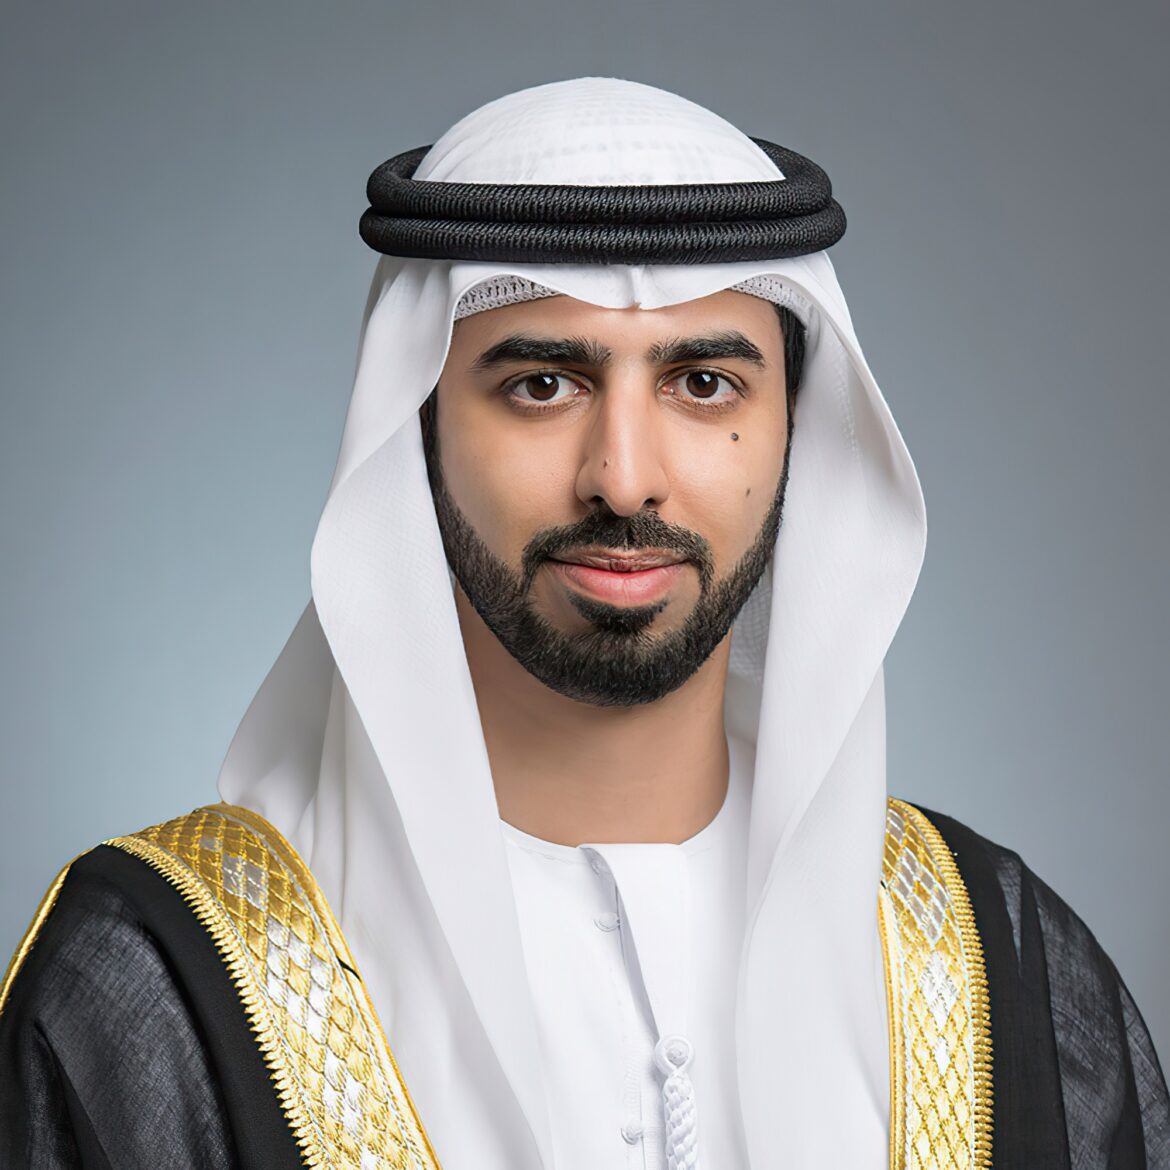 UAE’s national digital economy set to grow by US$140 billion by 2031